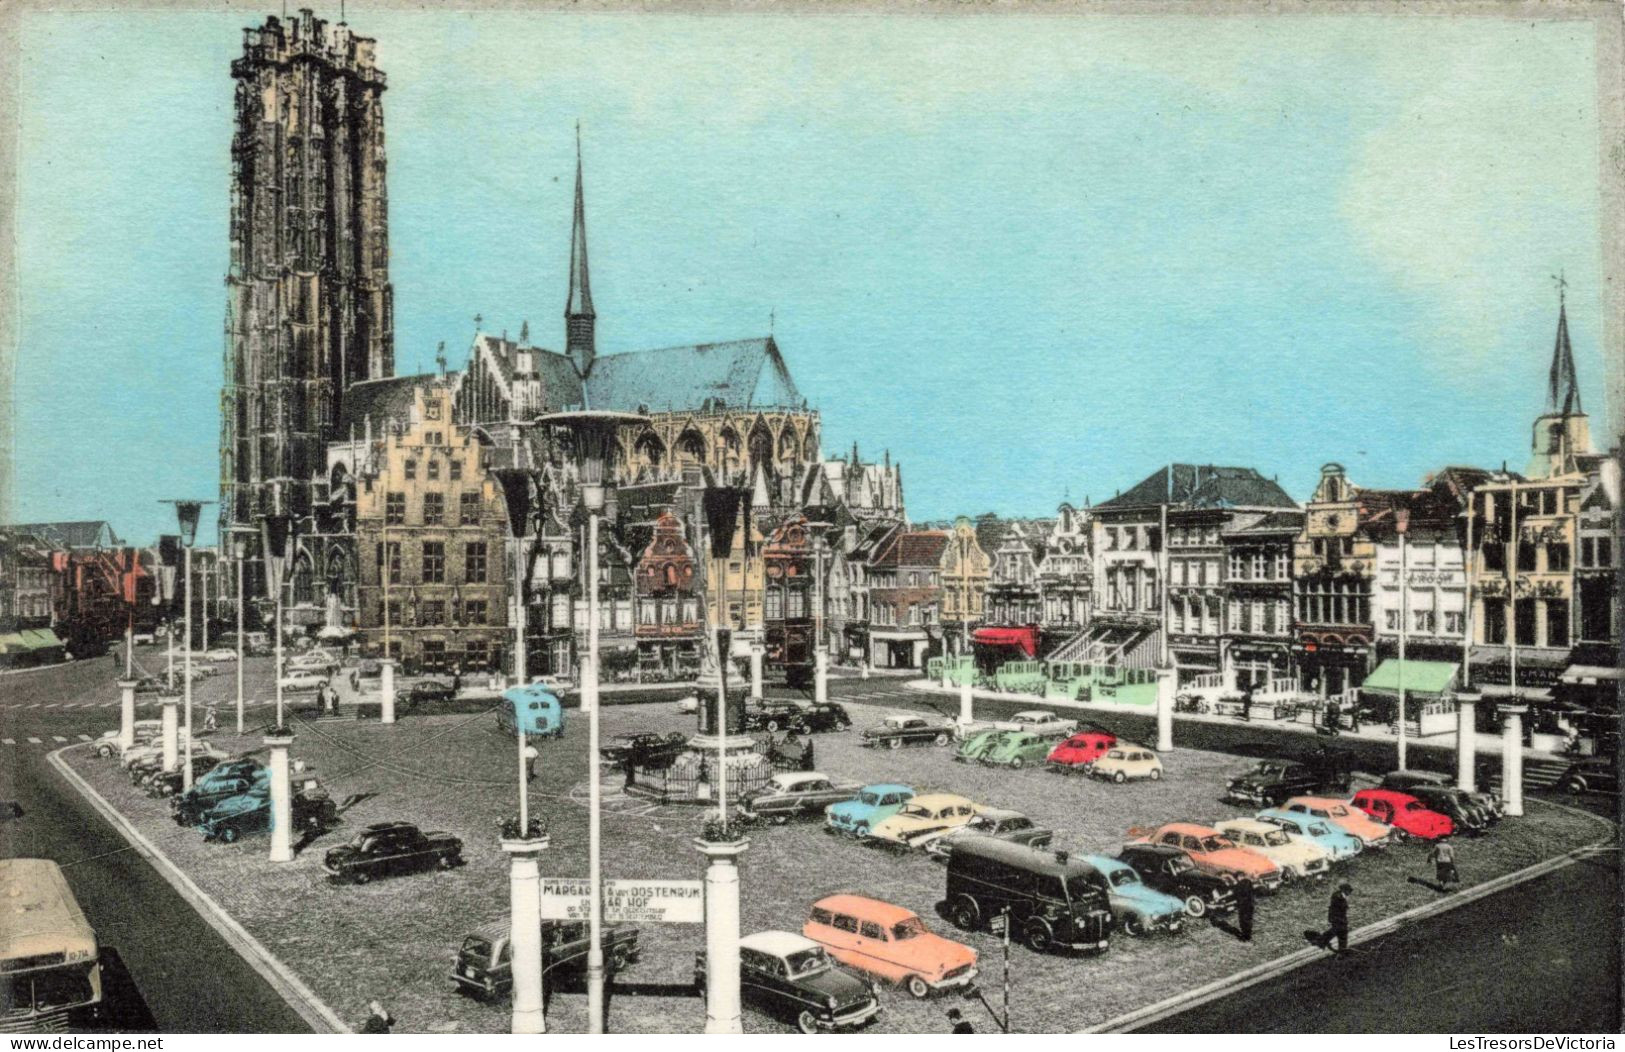 BELGIQUE - Malines - Cathédrale Saint-Rombaut - Colorisé - Carte Postale Ancienne - Mechelen